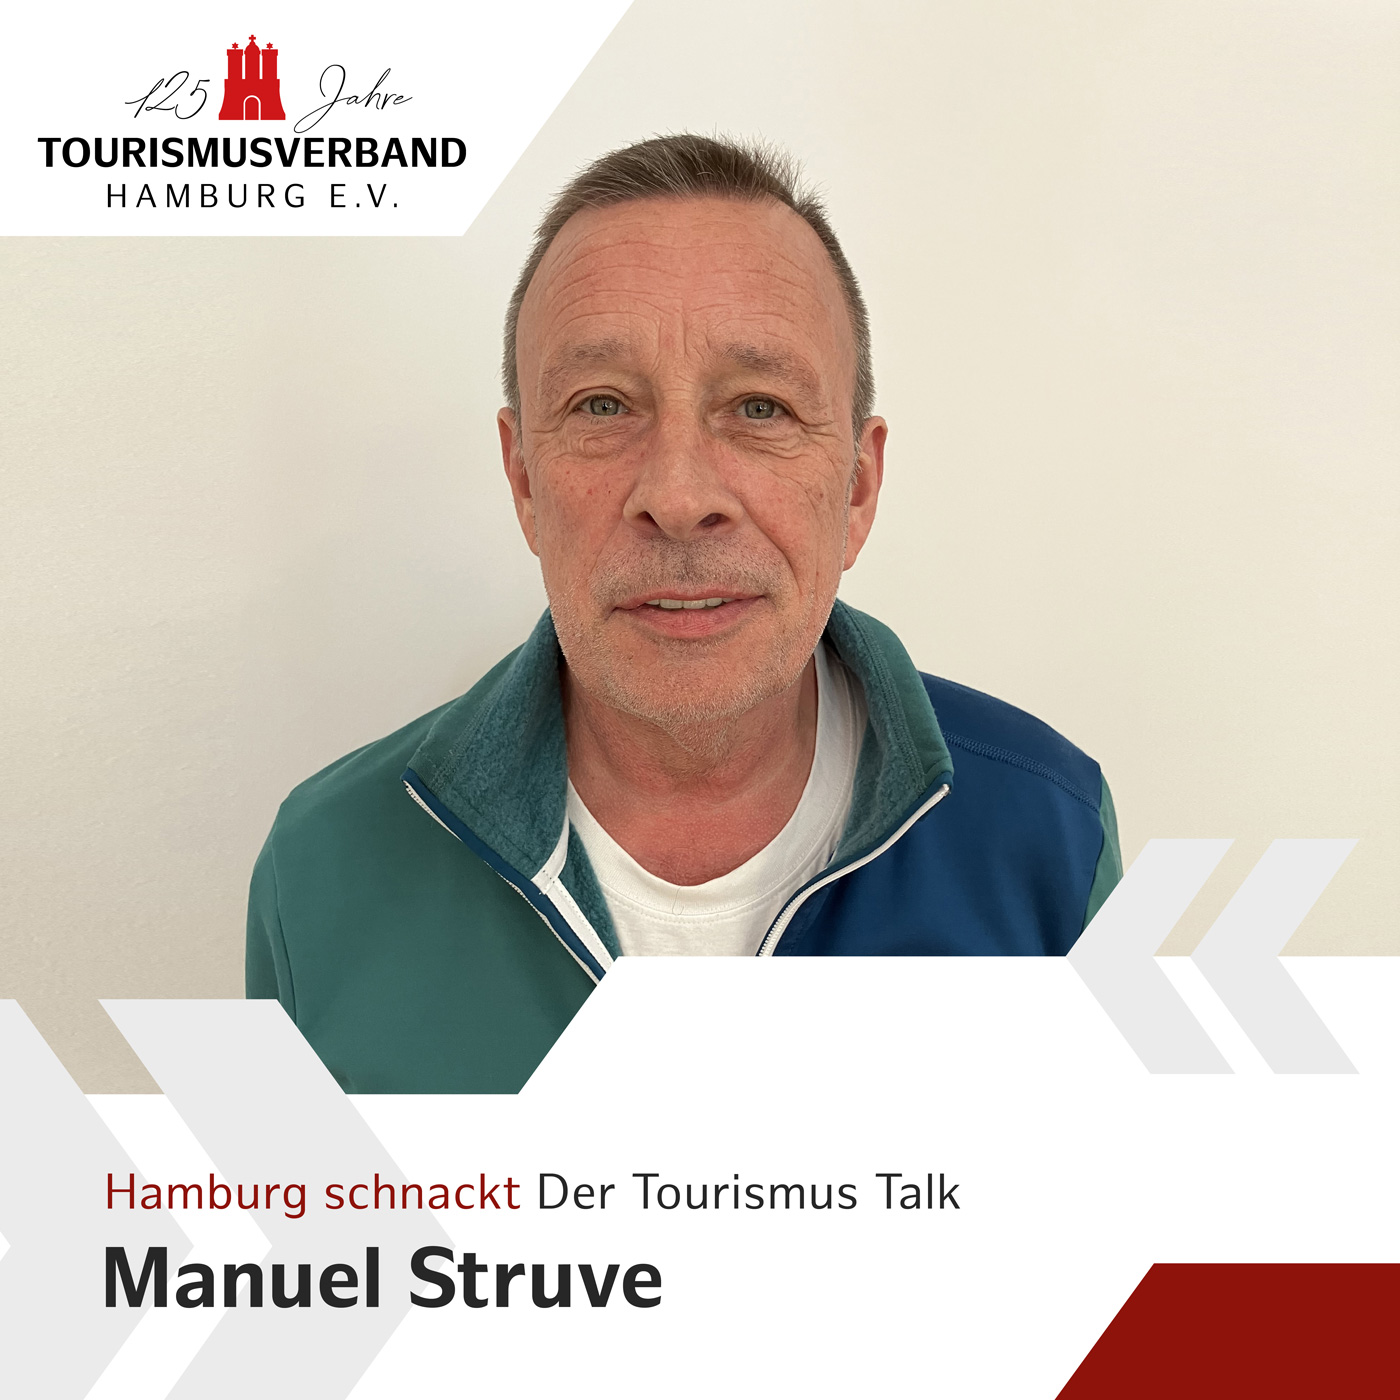 Hamburg schnackt mit Manuel Struve